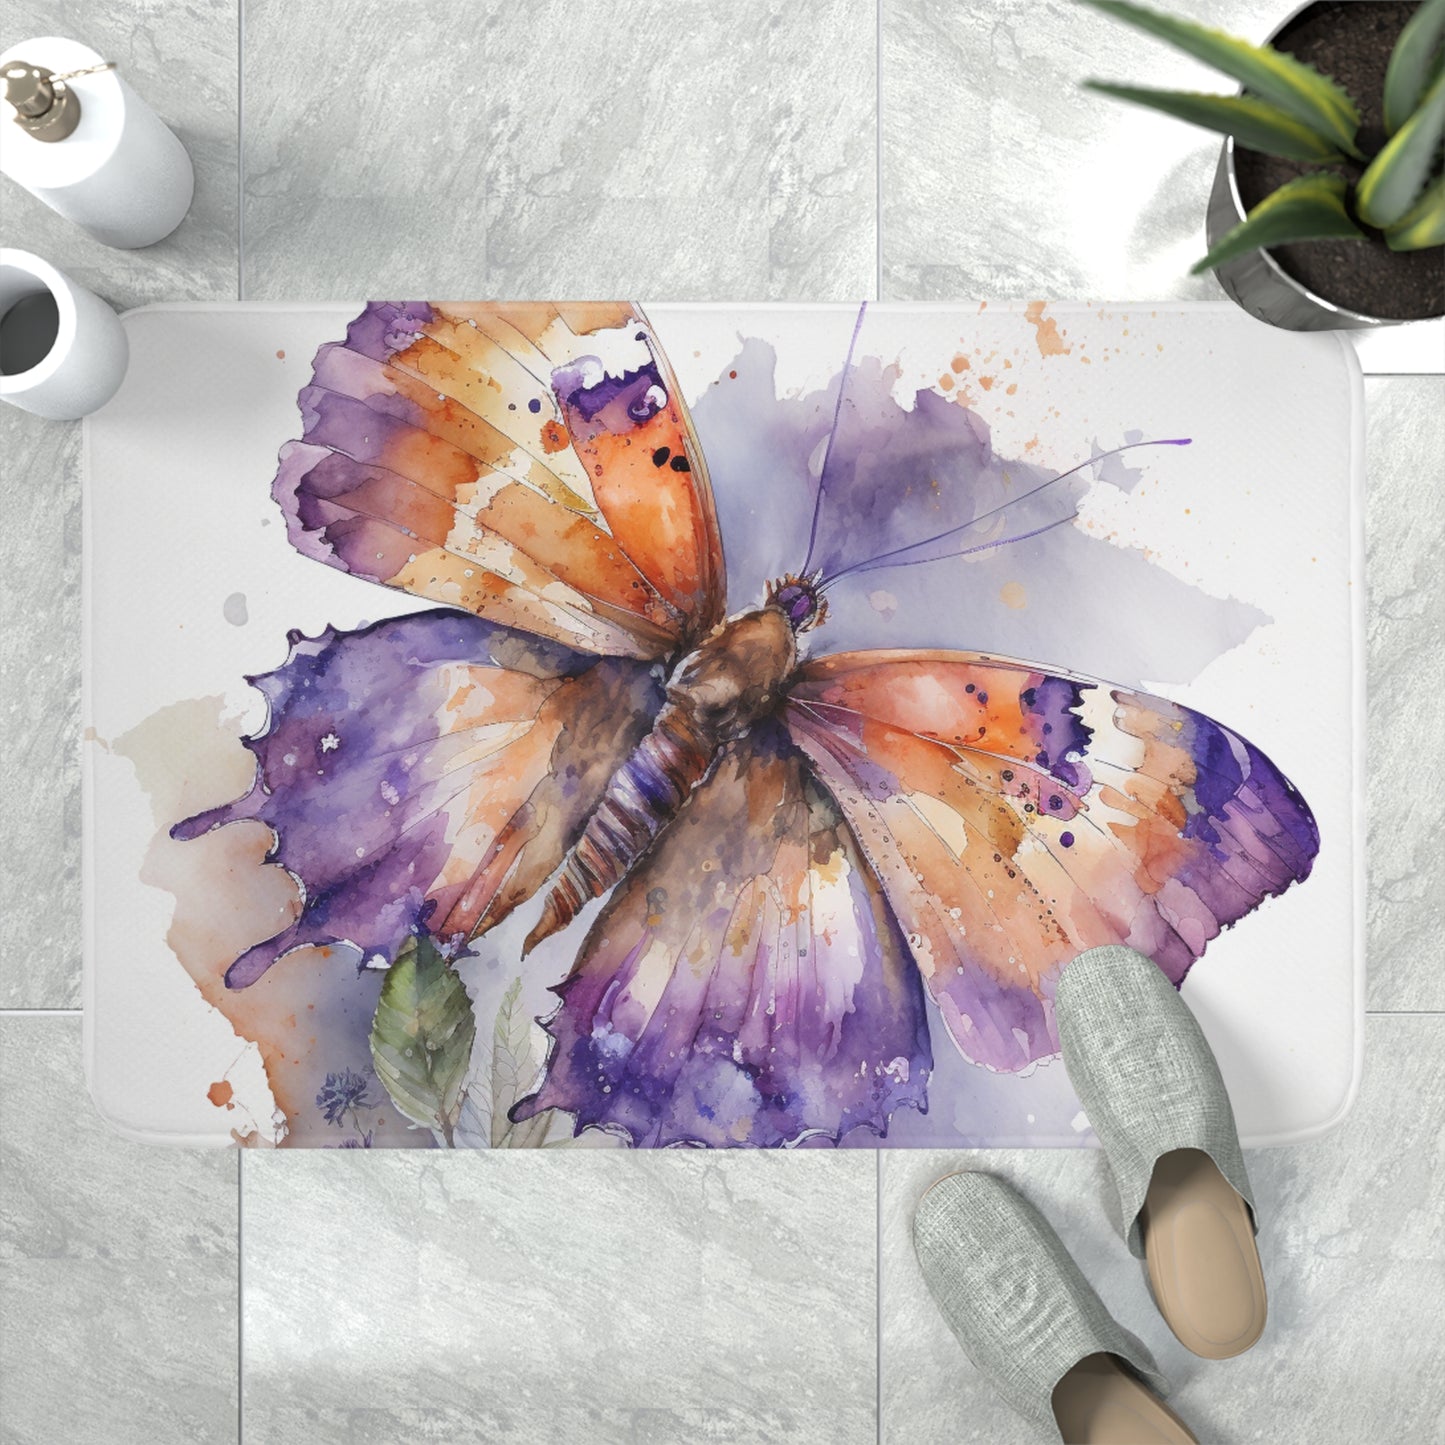 Memory Foam Bath Mat MerlinRose Watercolor Butterfly 1